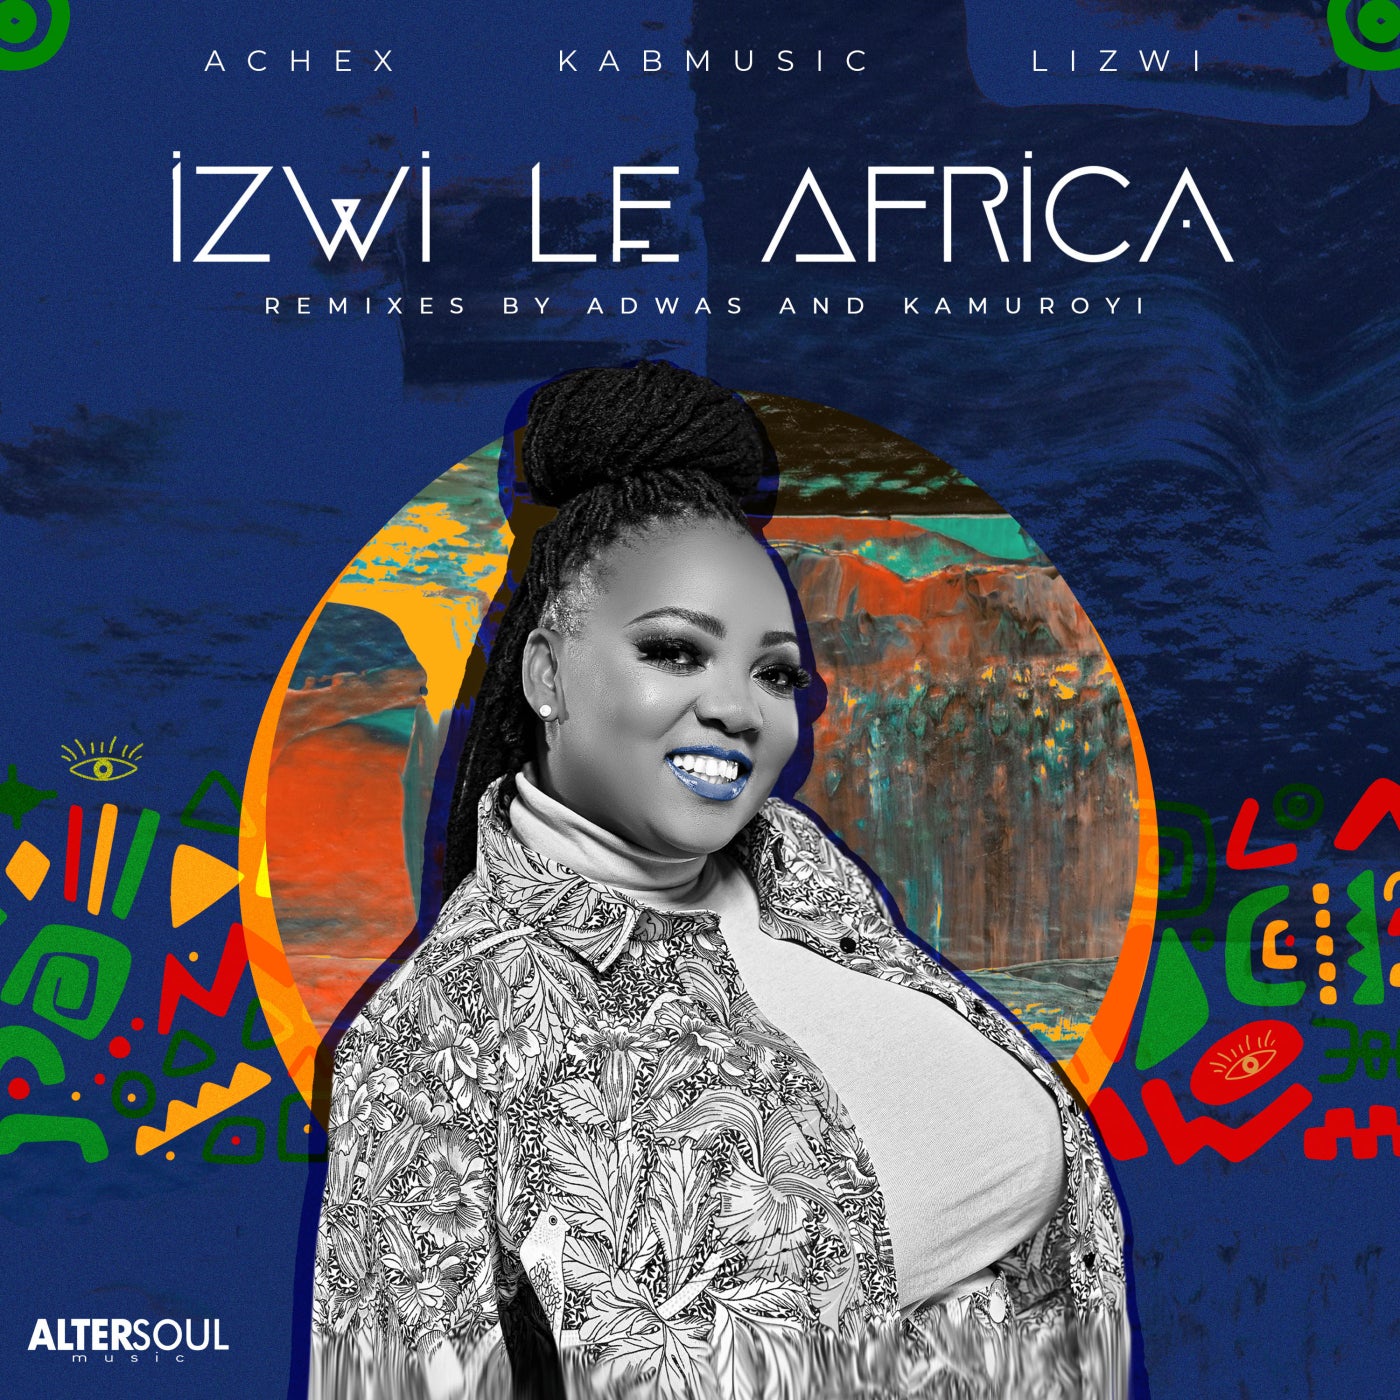 Lizwi певица. Amathole joezi Lizwi.